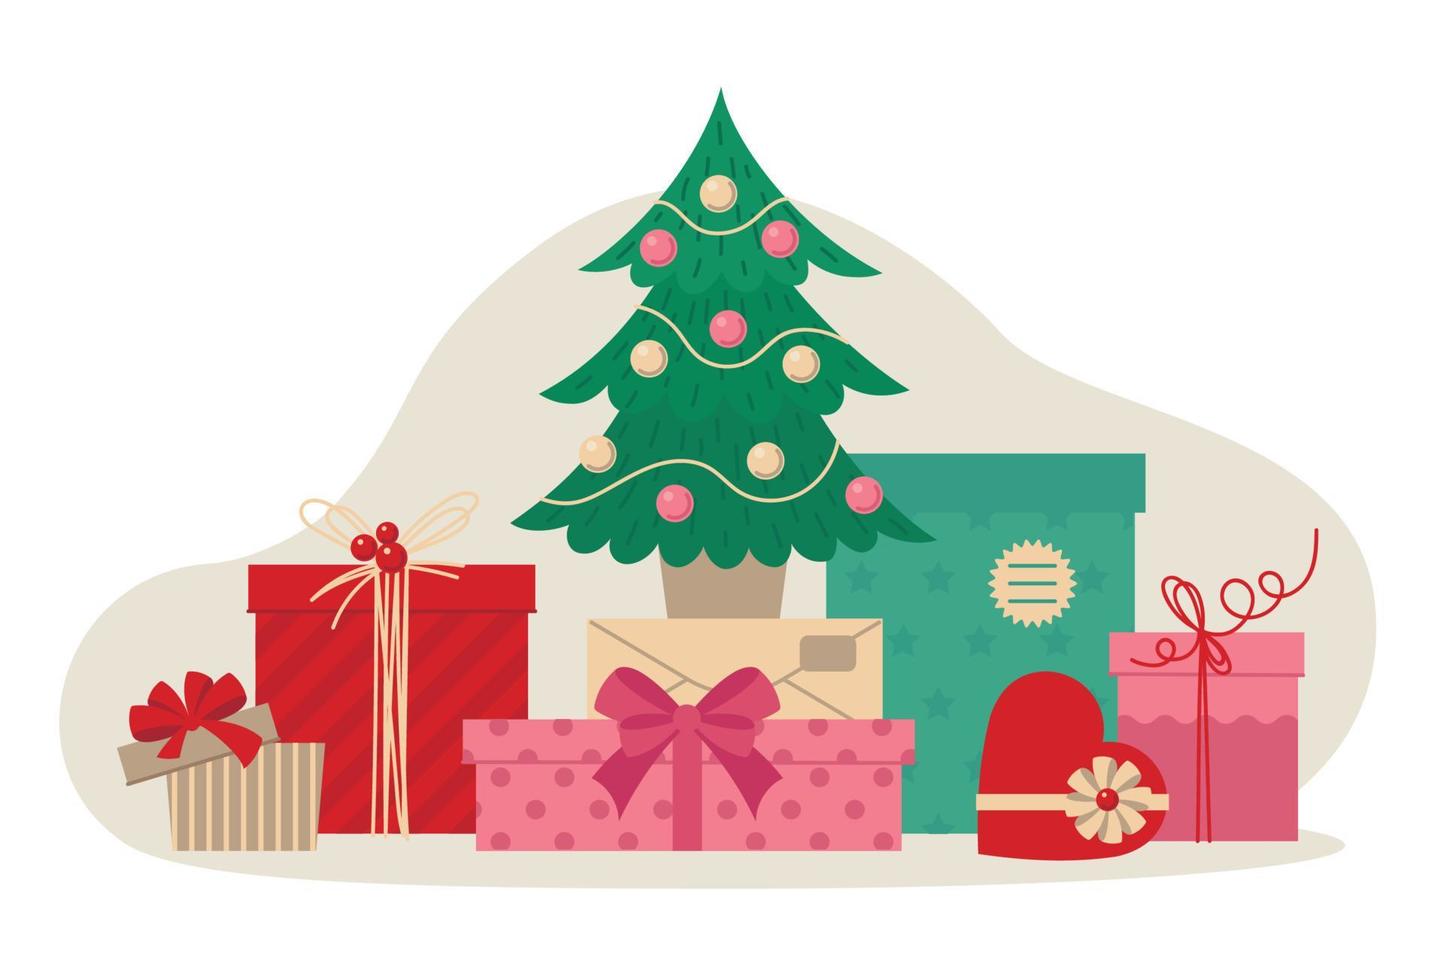 cajas de regalo con decoración navideña. árbol de Navidad. imagen vectorial vector